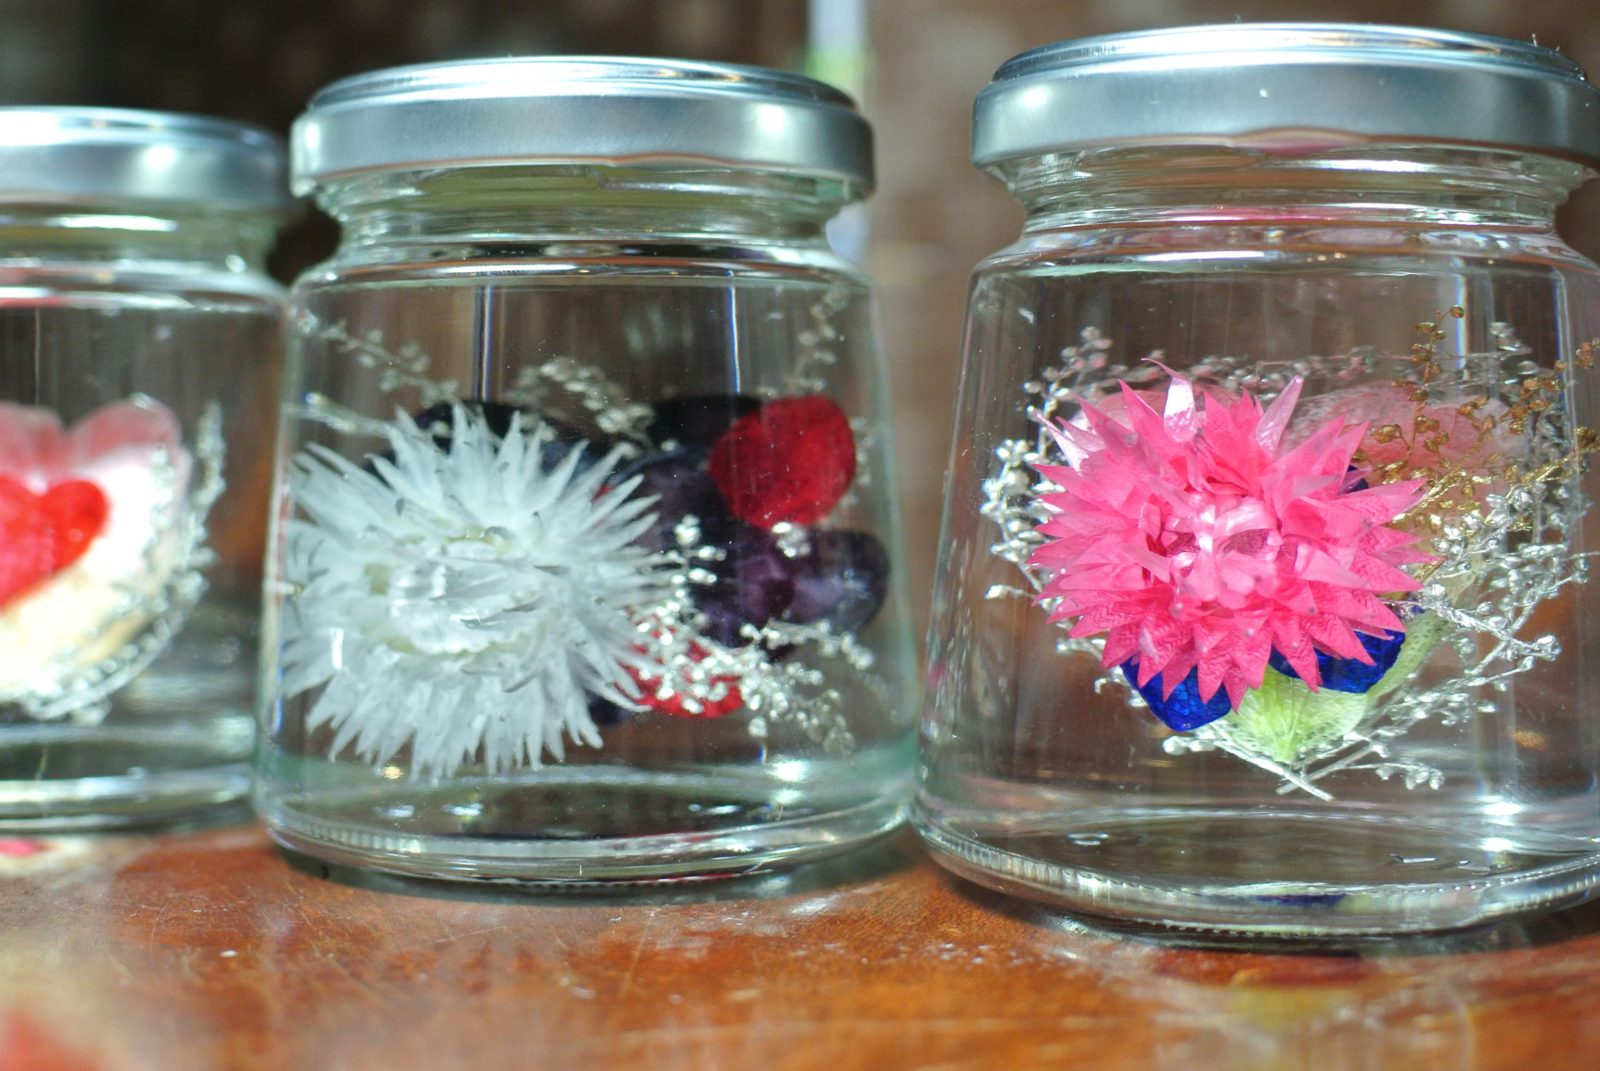 ﾌﾗﾜｰｱｰﾄﾘｳﾑ ﾊｰﾊﾞﾘｳﾑ ｻﾛﾝﾄﾞﾐﾅ 千葉県旭市で花屋をお探しならギフトに最適なスタンド花 ハーバリウムが評判のよしの生花